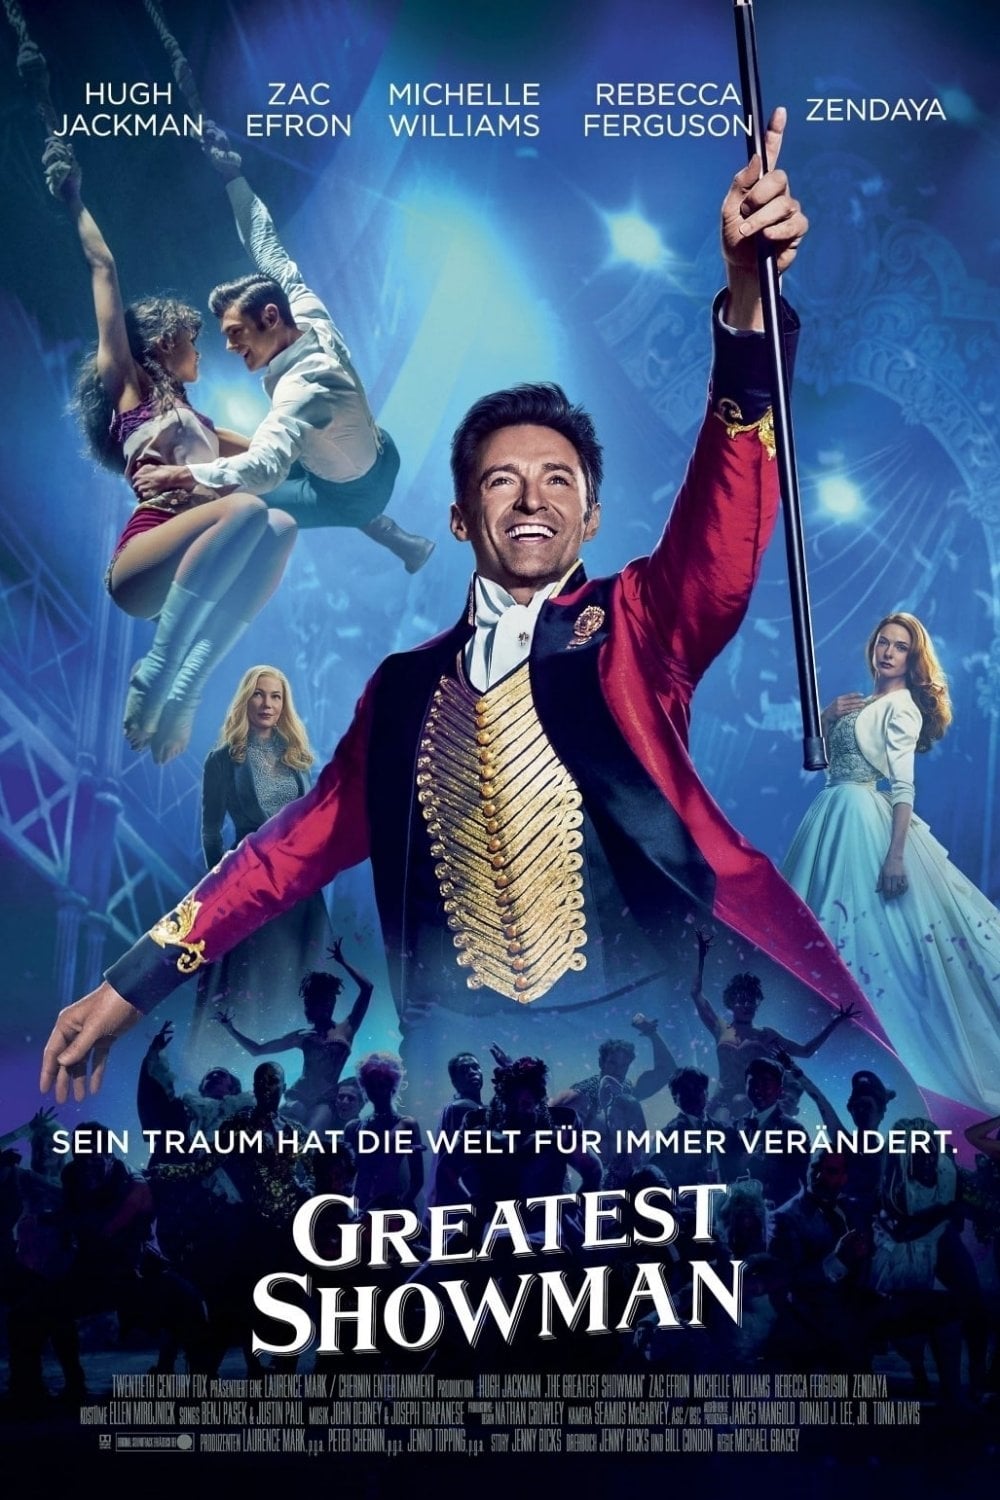 Plakat von "Greatest Showman"